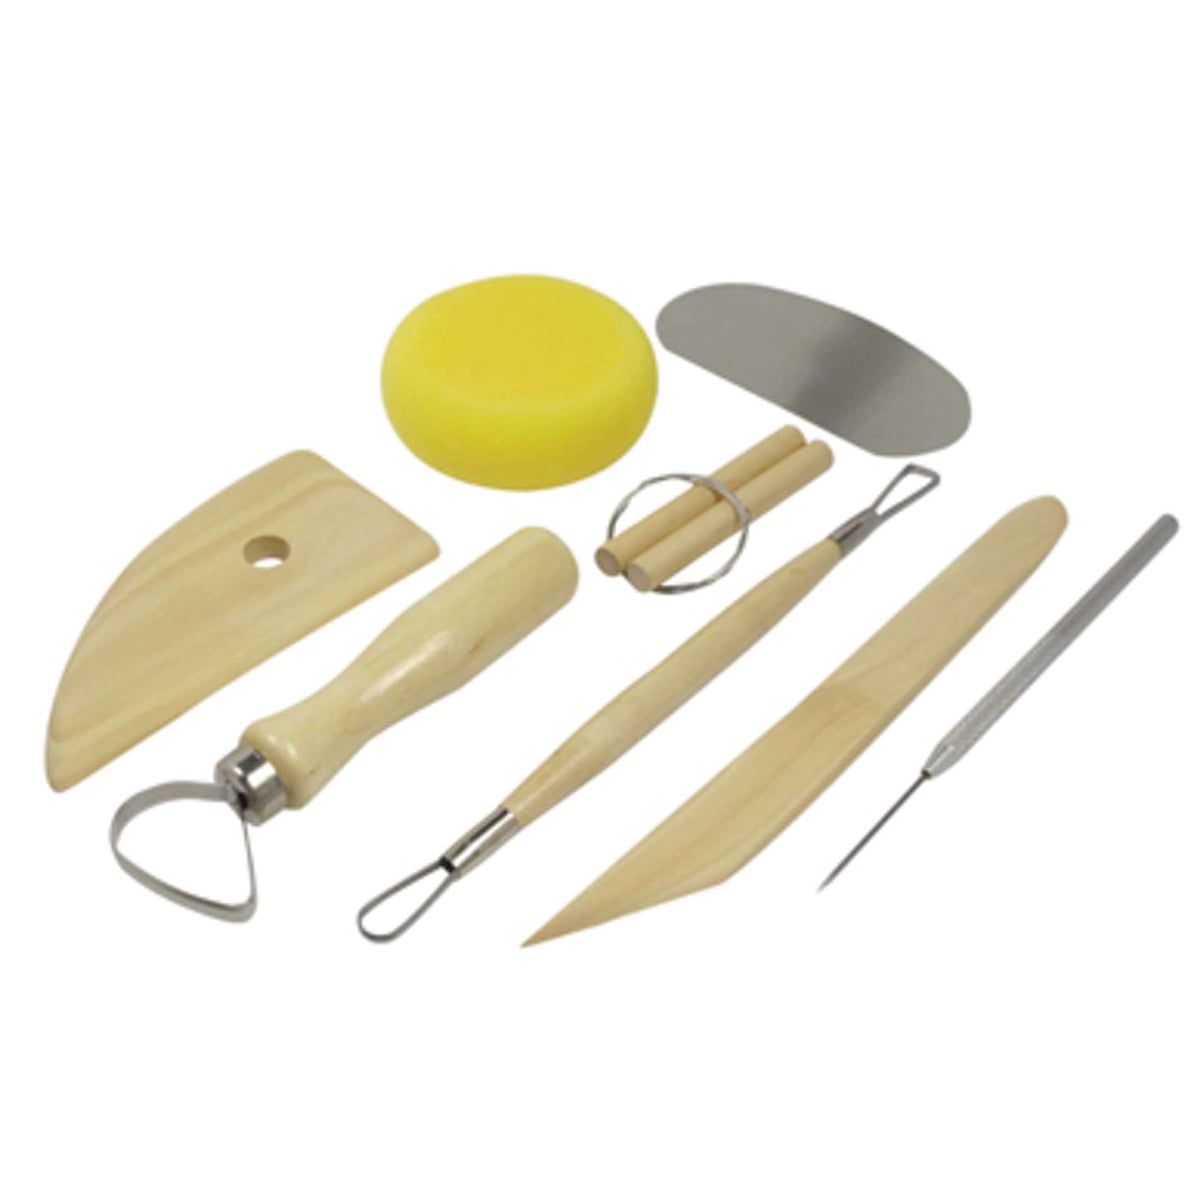 Richeson Economy Pottery Tool Kit